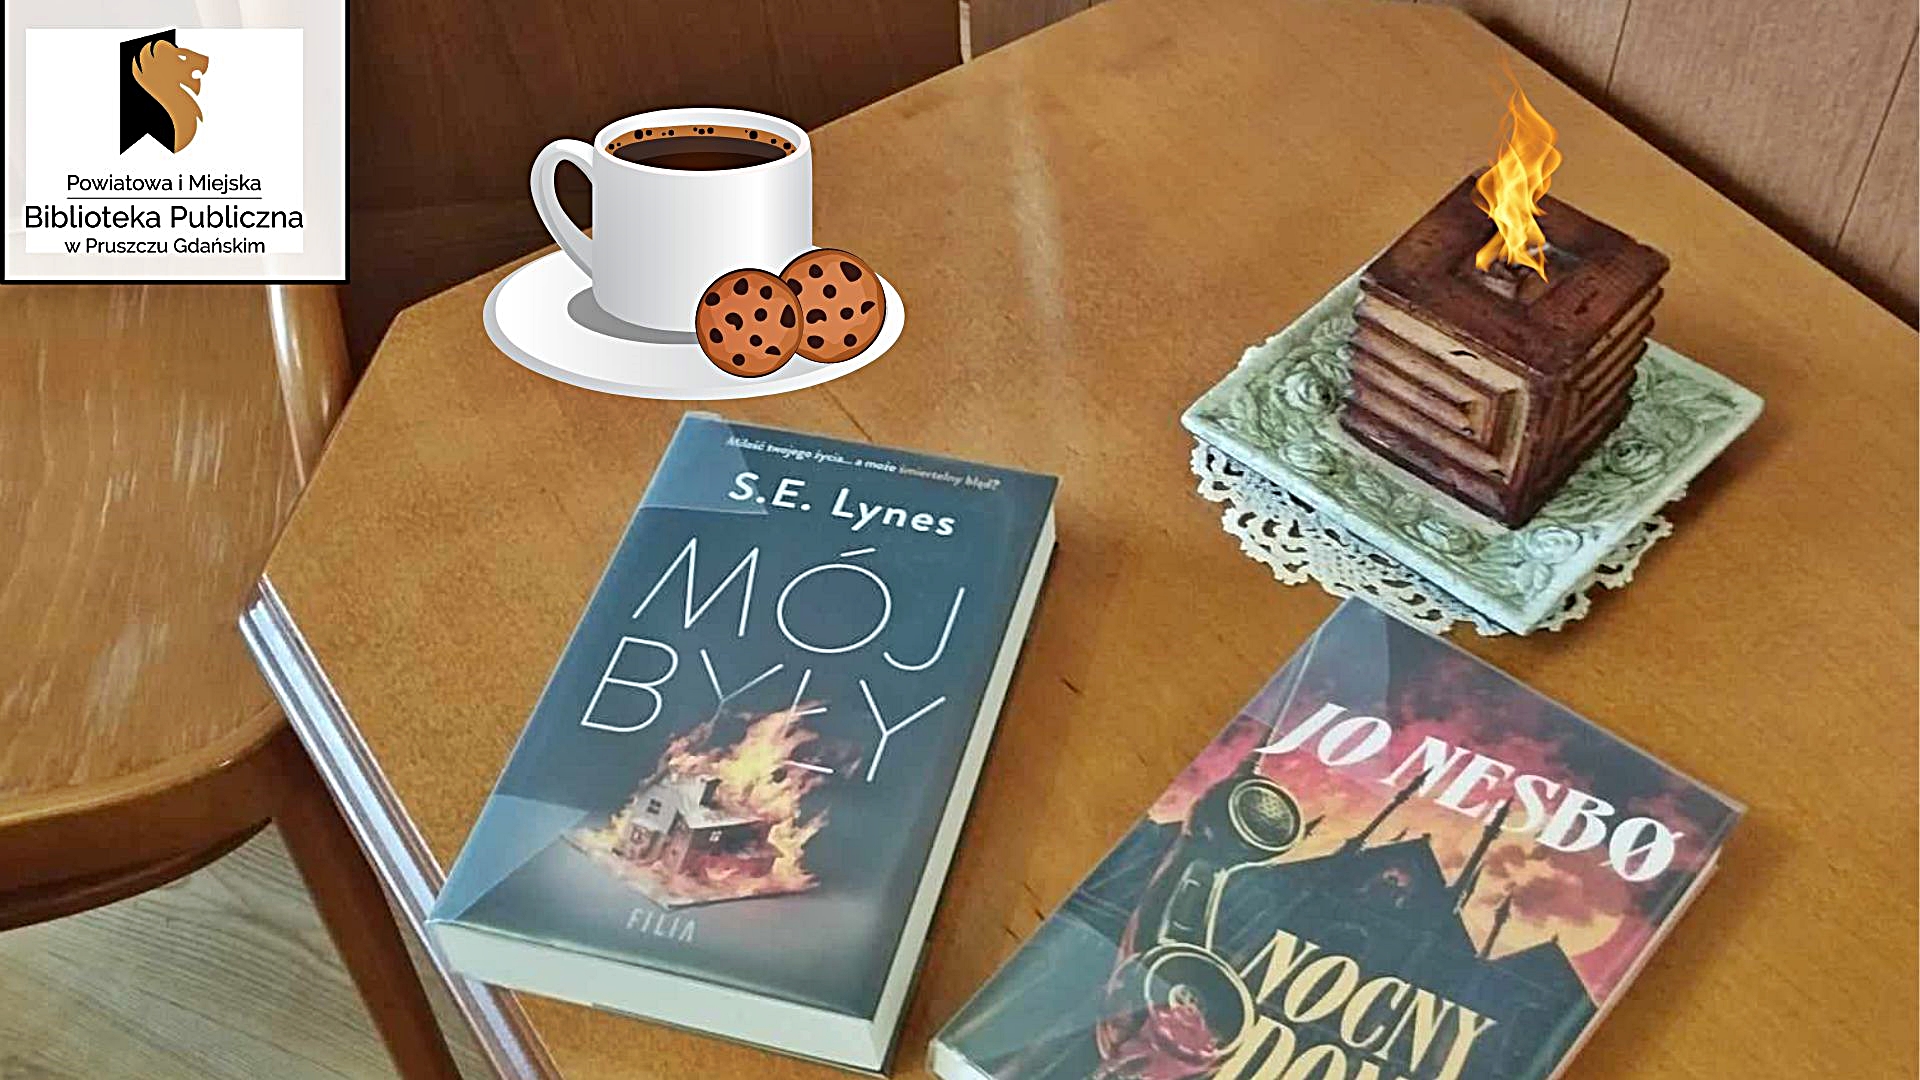 Na stoliku leżą 2 książki: „Mój Były” S.E. Lynes " oraz „Nocny Dom” Jo Nesbo . Nad książkami filiżanka z kawą - z prawej strony oraz zapalona świeczka (z lewej strony).